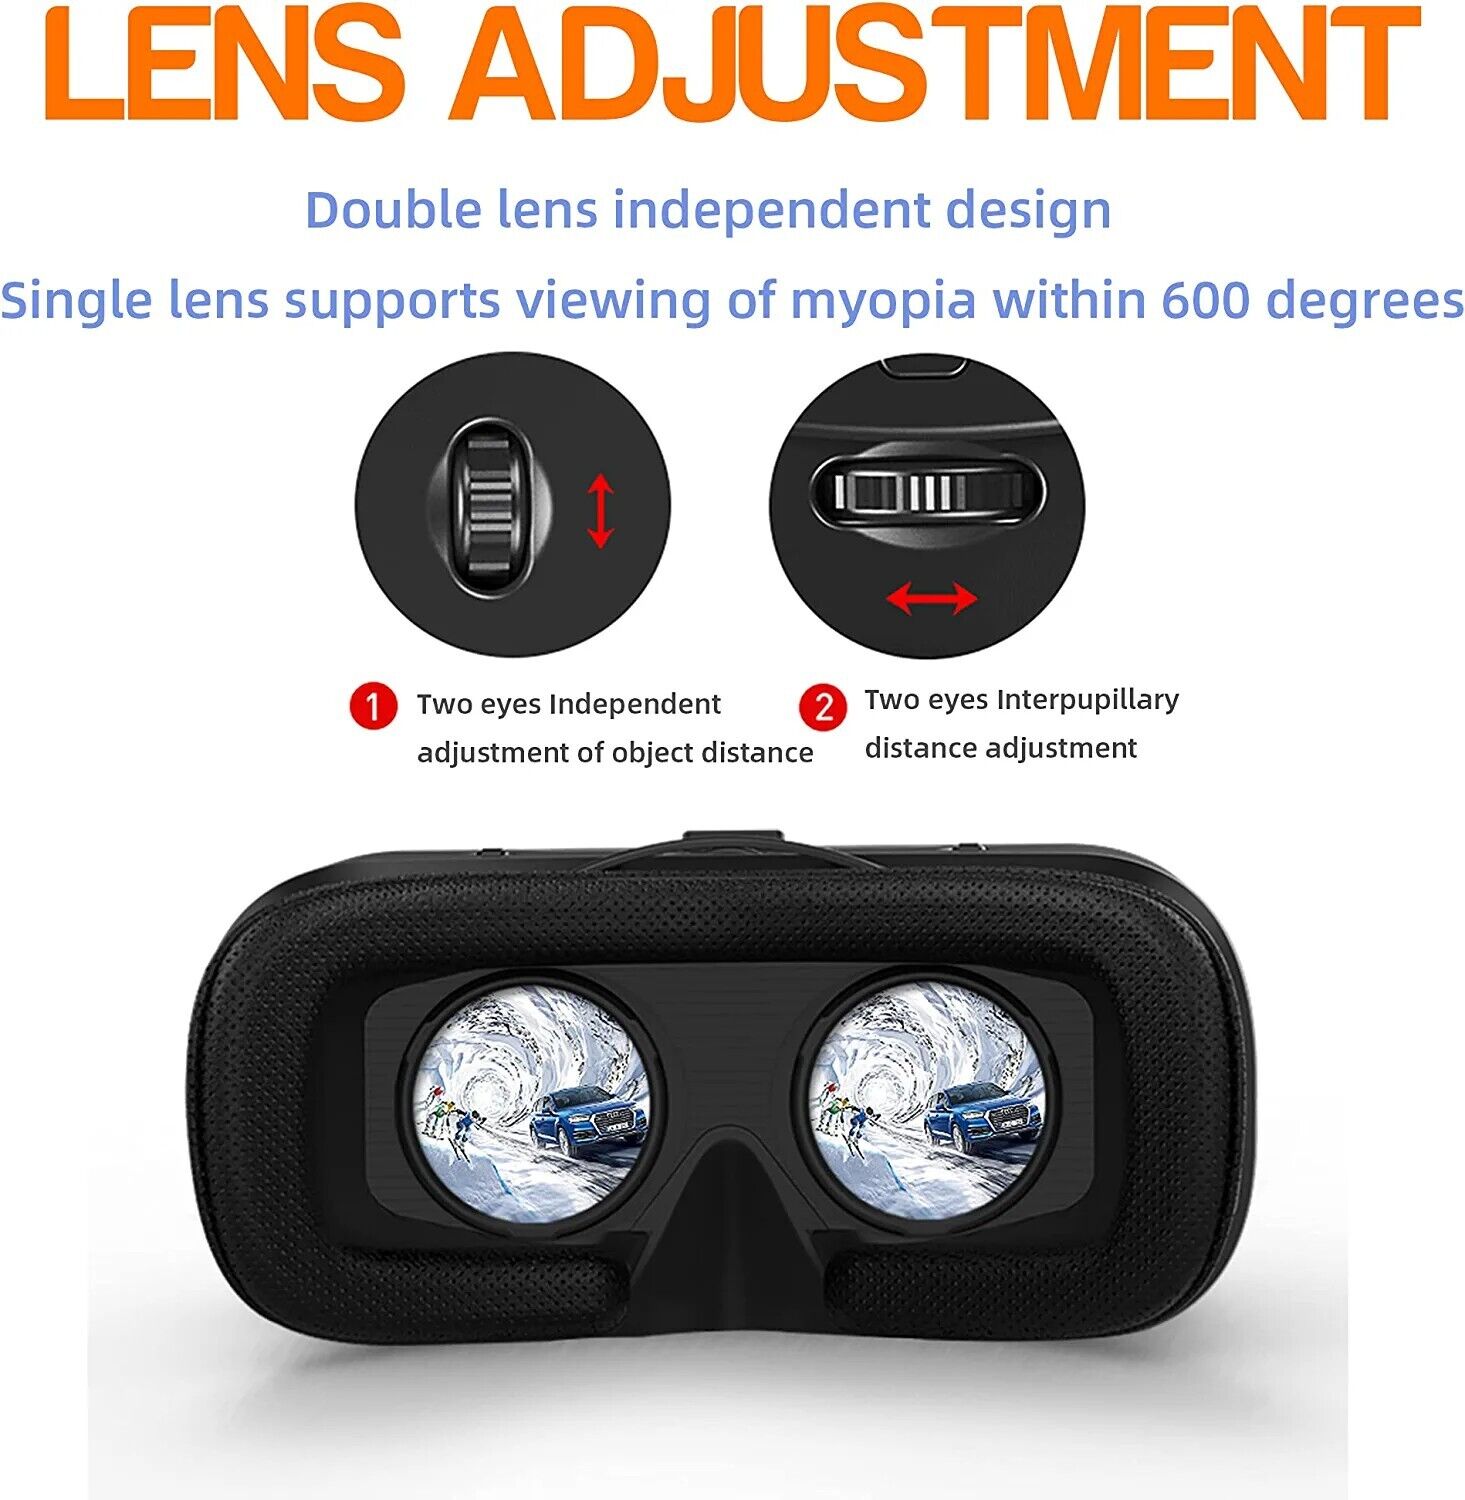 VR Brille mit Kopfhörern Virtual Reality Headset geeignet Für 3D VR FIYAPOO